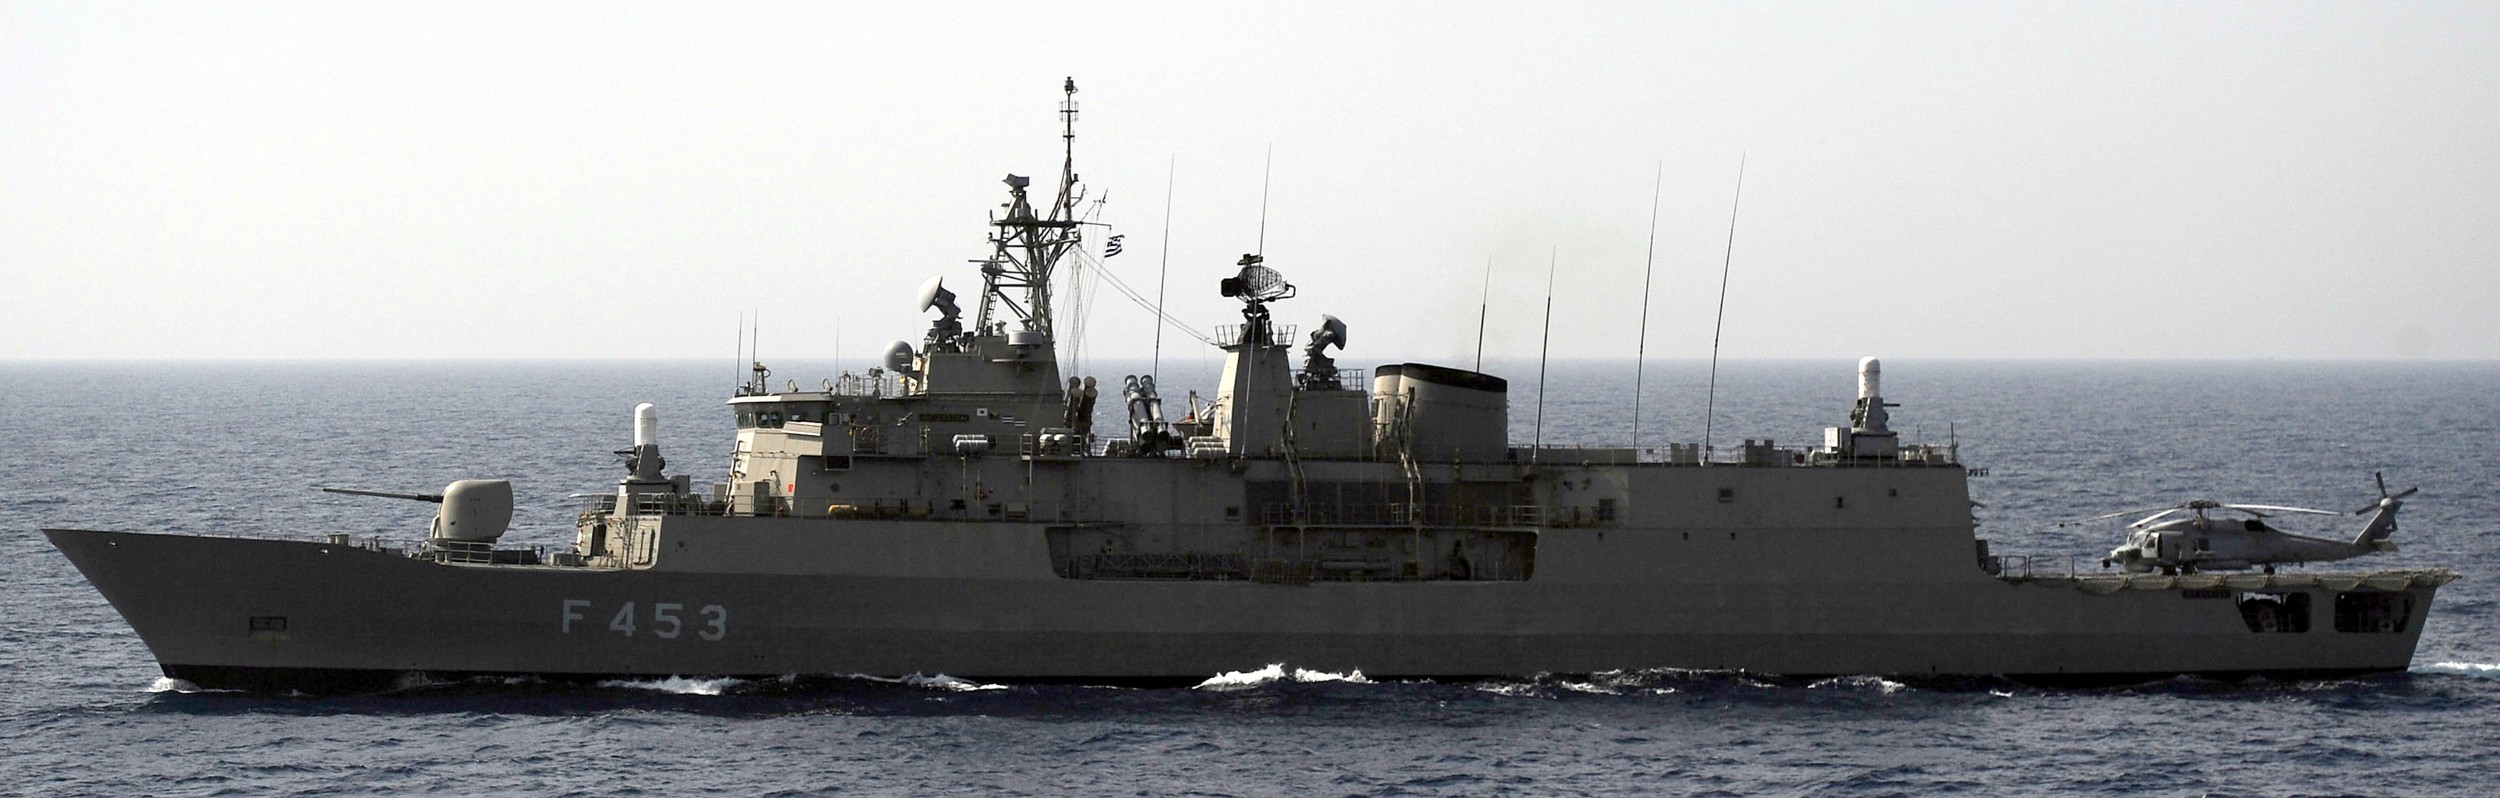 f 453 hs spetsai hydra class frigate meko-200hn hellenic navy greece 15